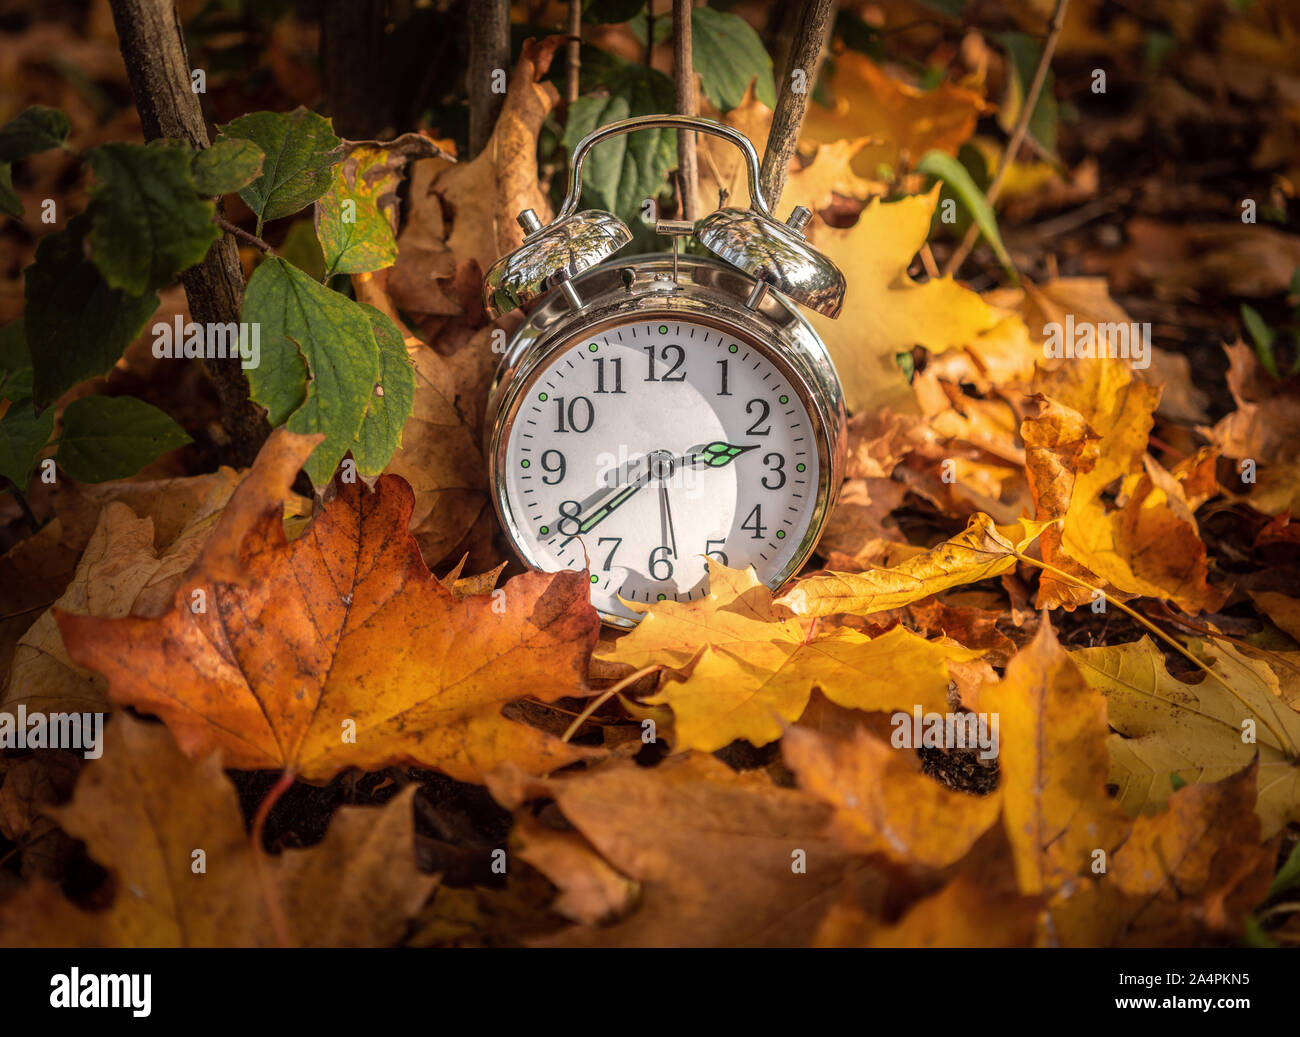 Un réveil au milieu de feuilles d'automne, fin de l'heure d'été / heure d'concept Banque D'Images